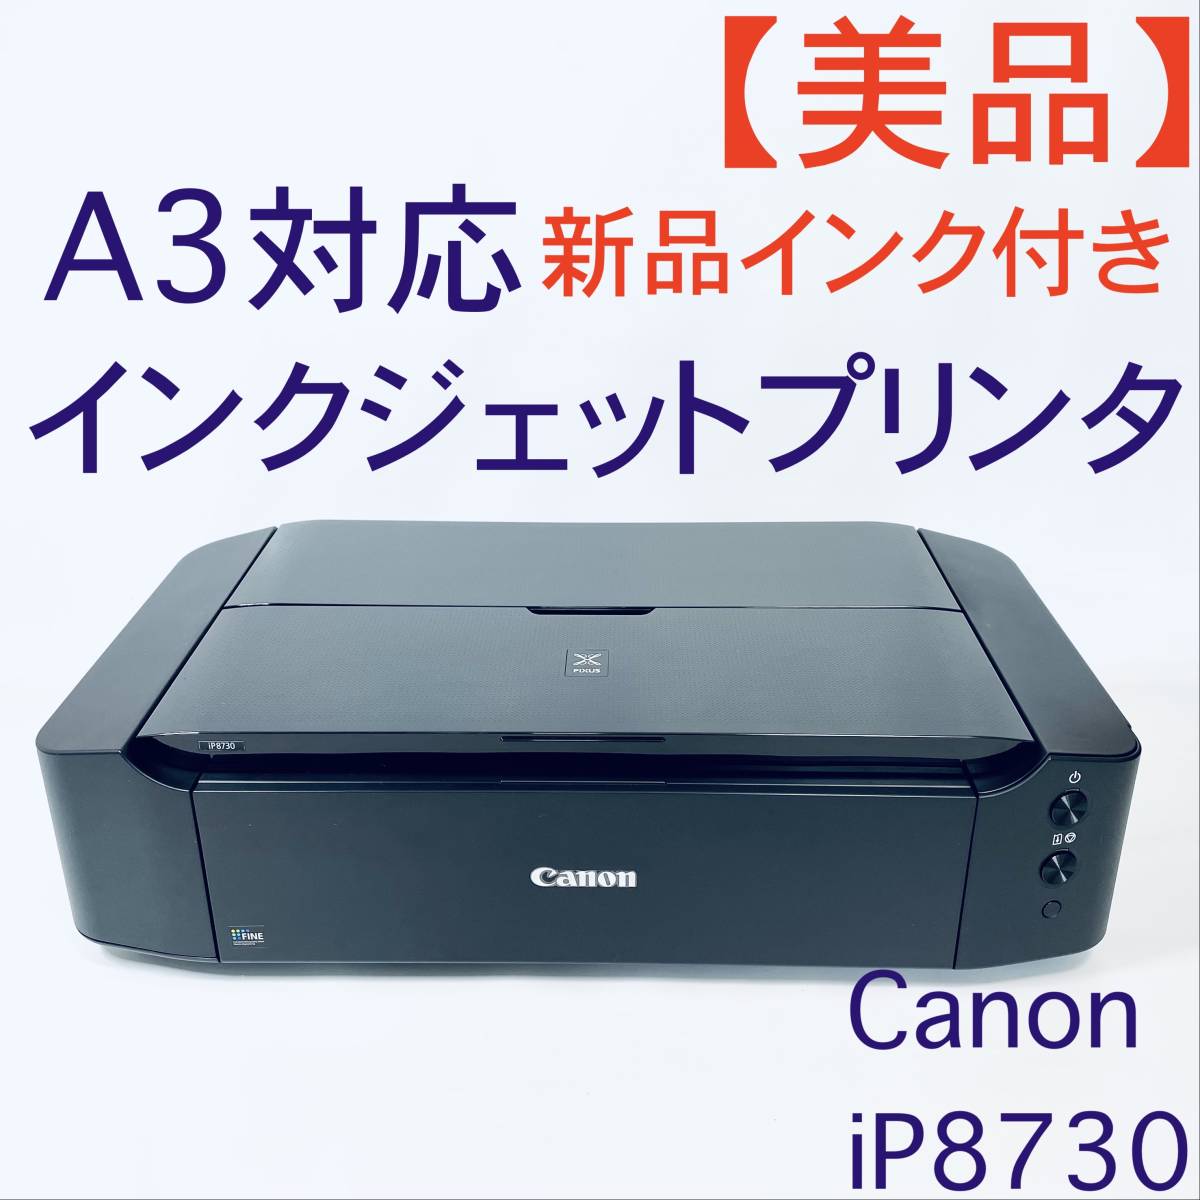 【美品】インクジェットプリンタ Canon iP8730 ブラック 新品インク付き